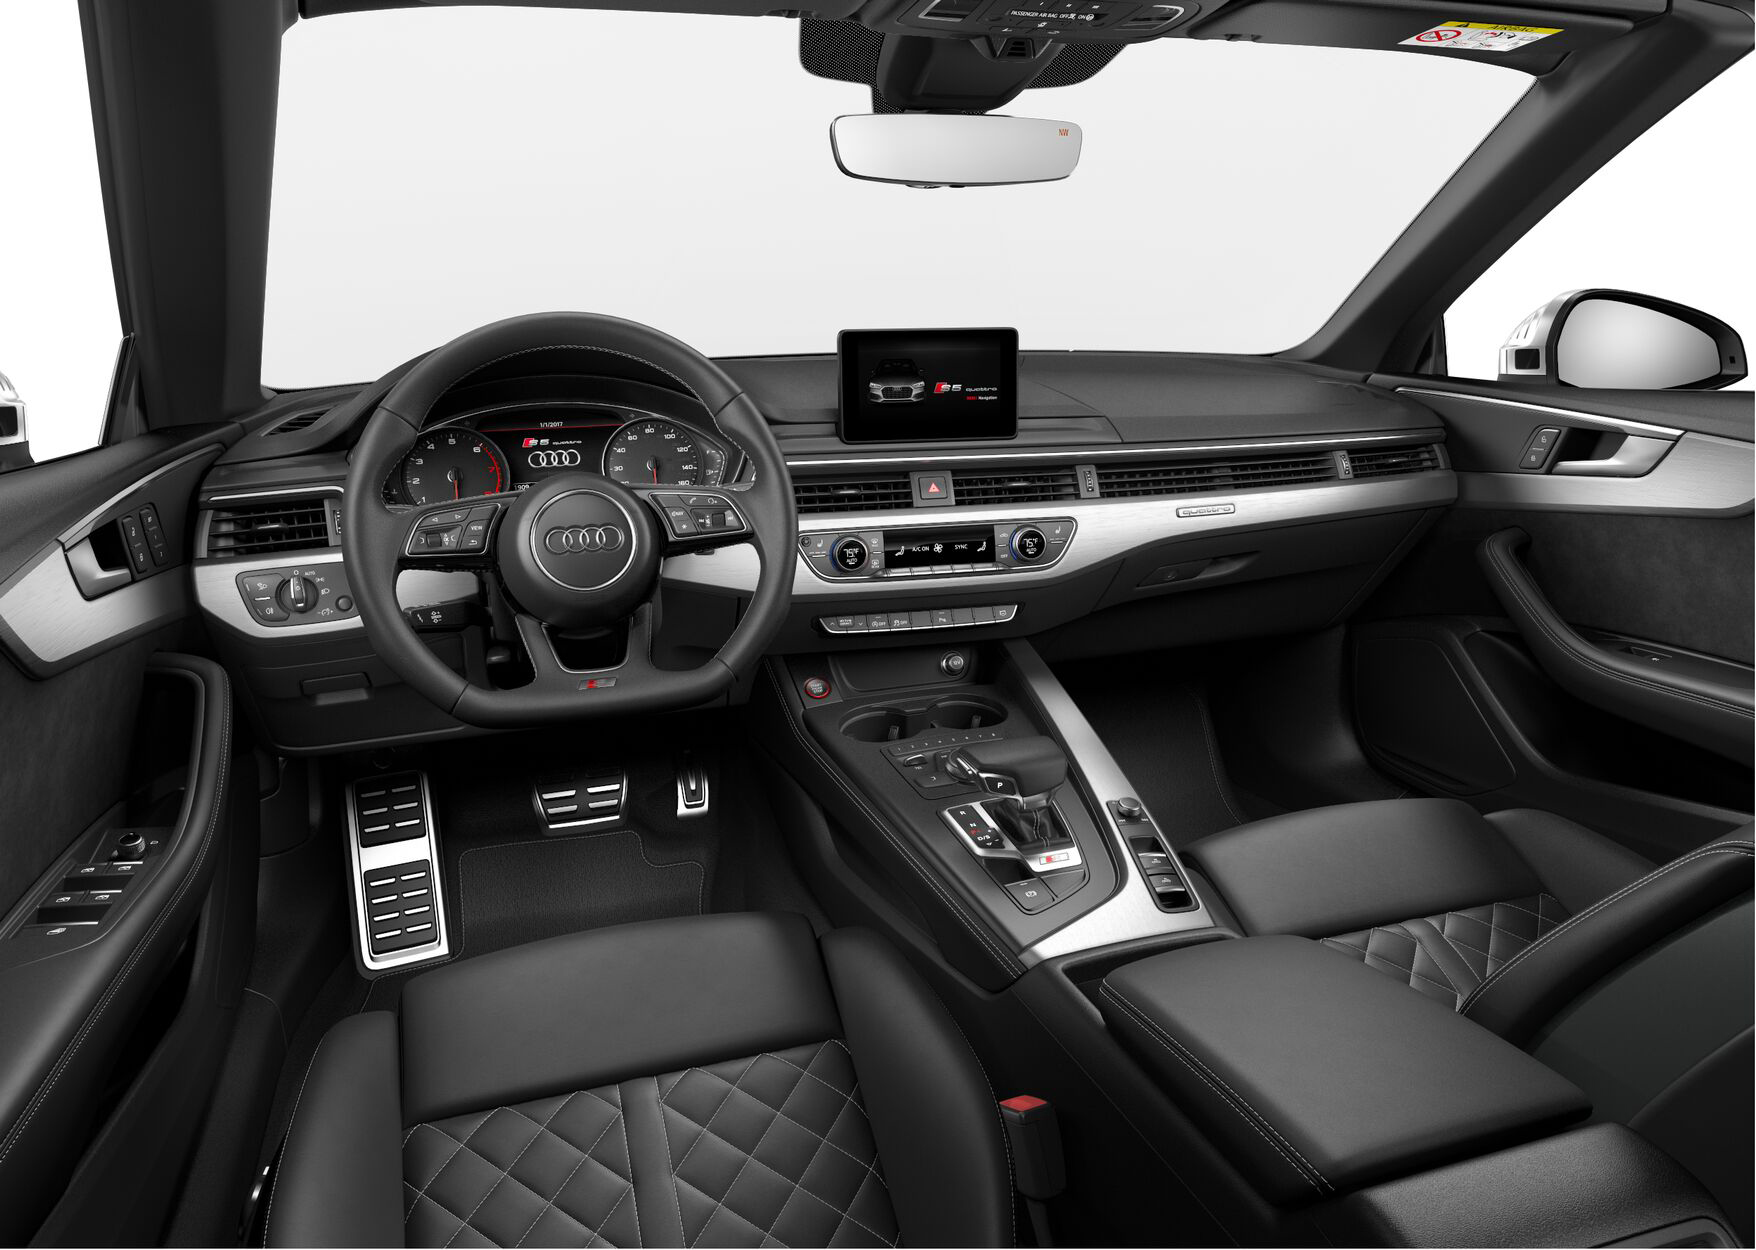 Audi S5 Cabriolet Premium Plus interior view